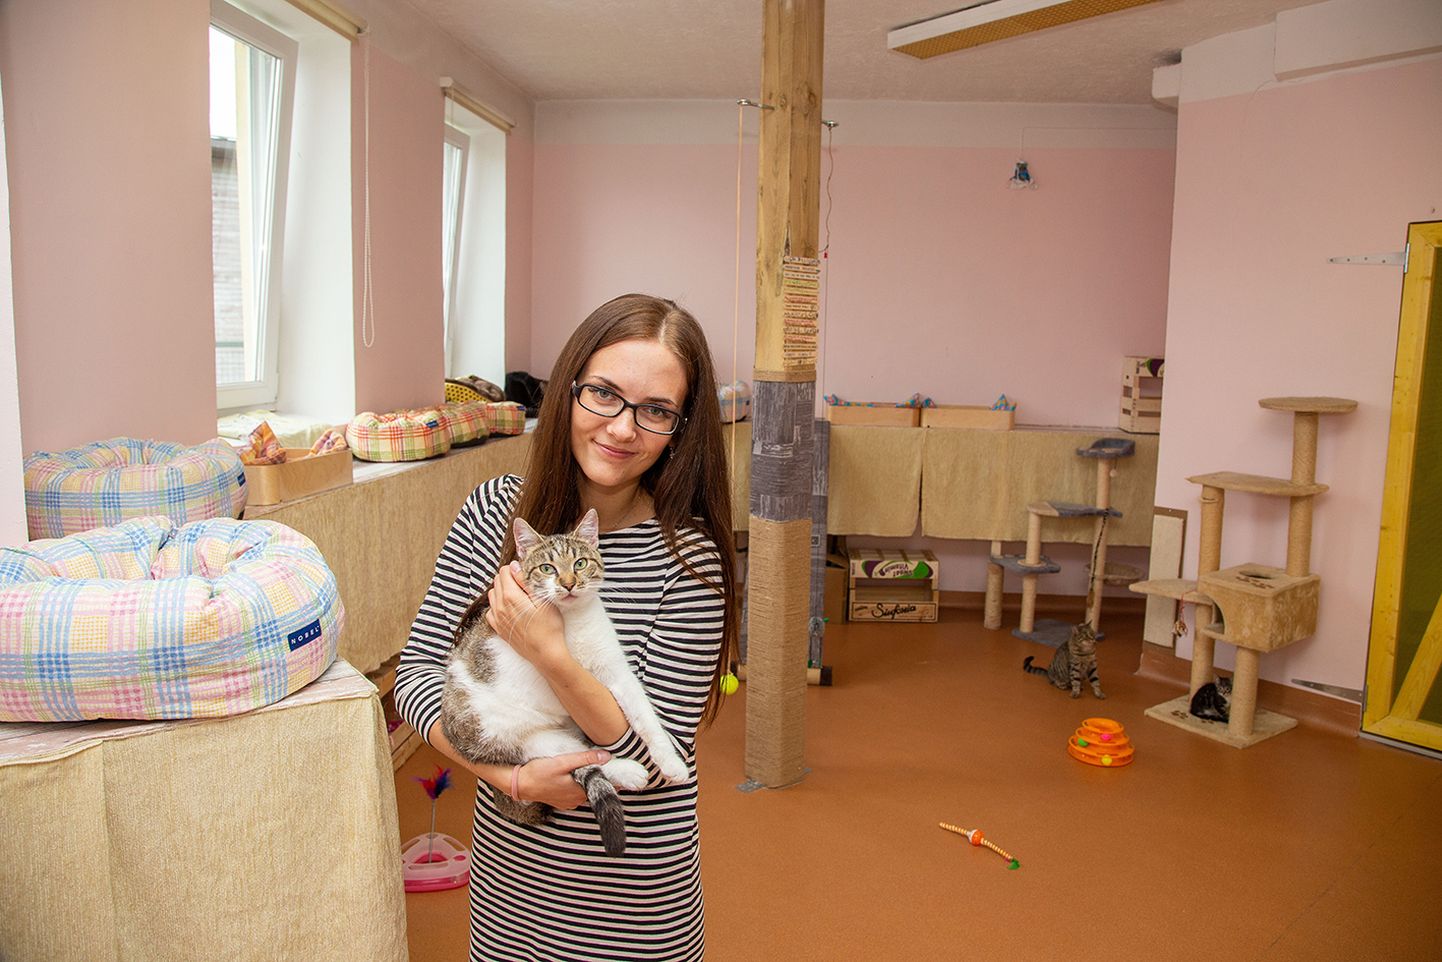 MTÜ Paikass vabatahtlik Virge Piisner sättis Paide hooleta jäänud kassidele valmis uued eluruumid.